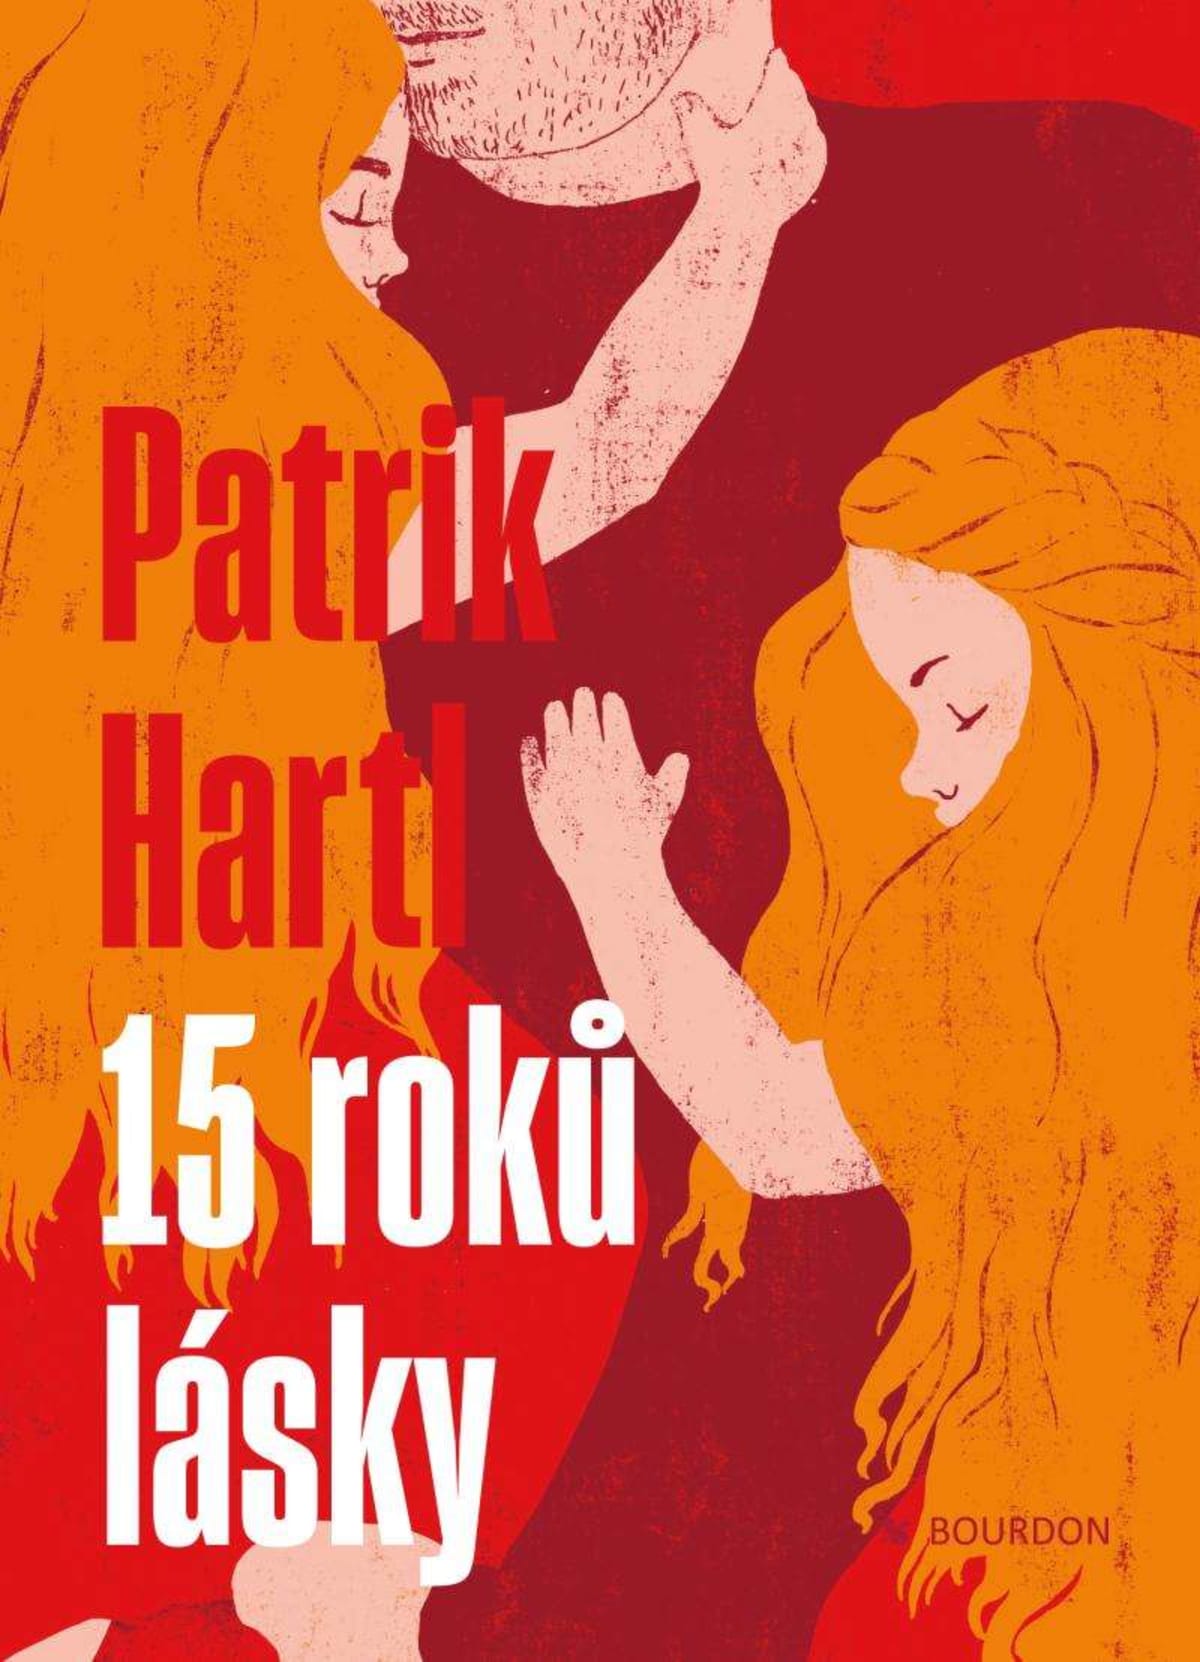 Soutěžte se Showtimem o knihu Patrika Hartla 15 roků lásky